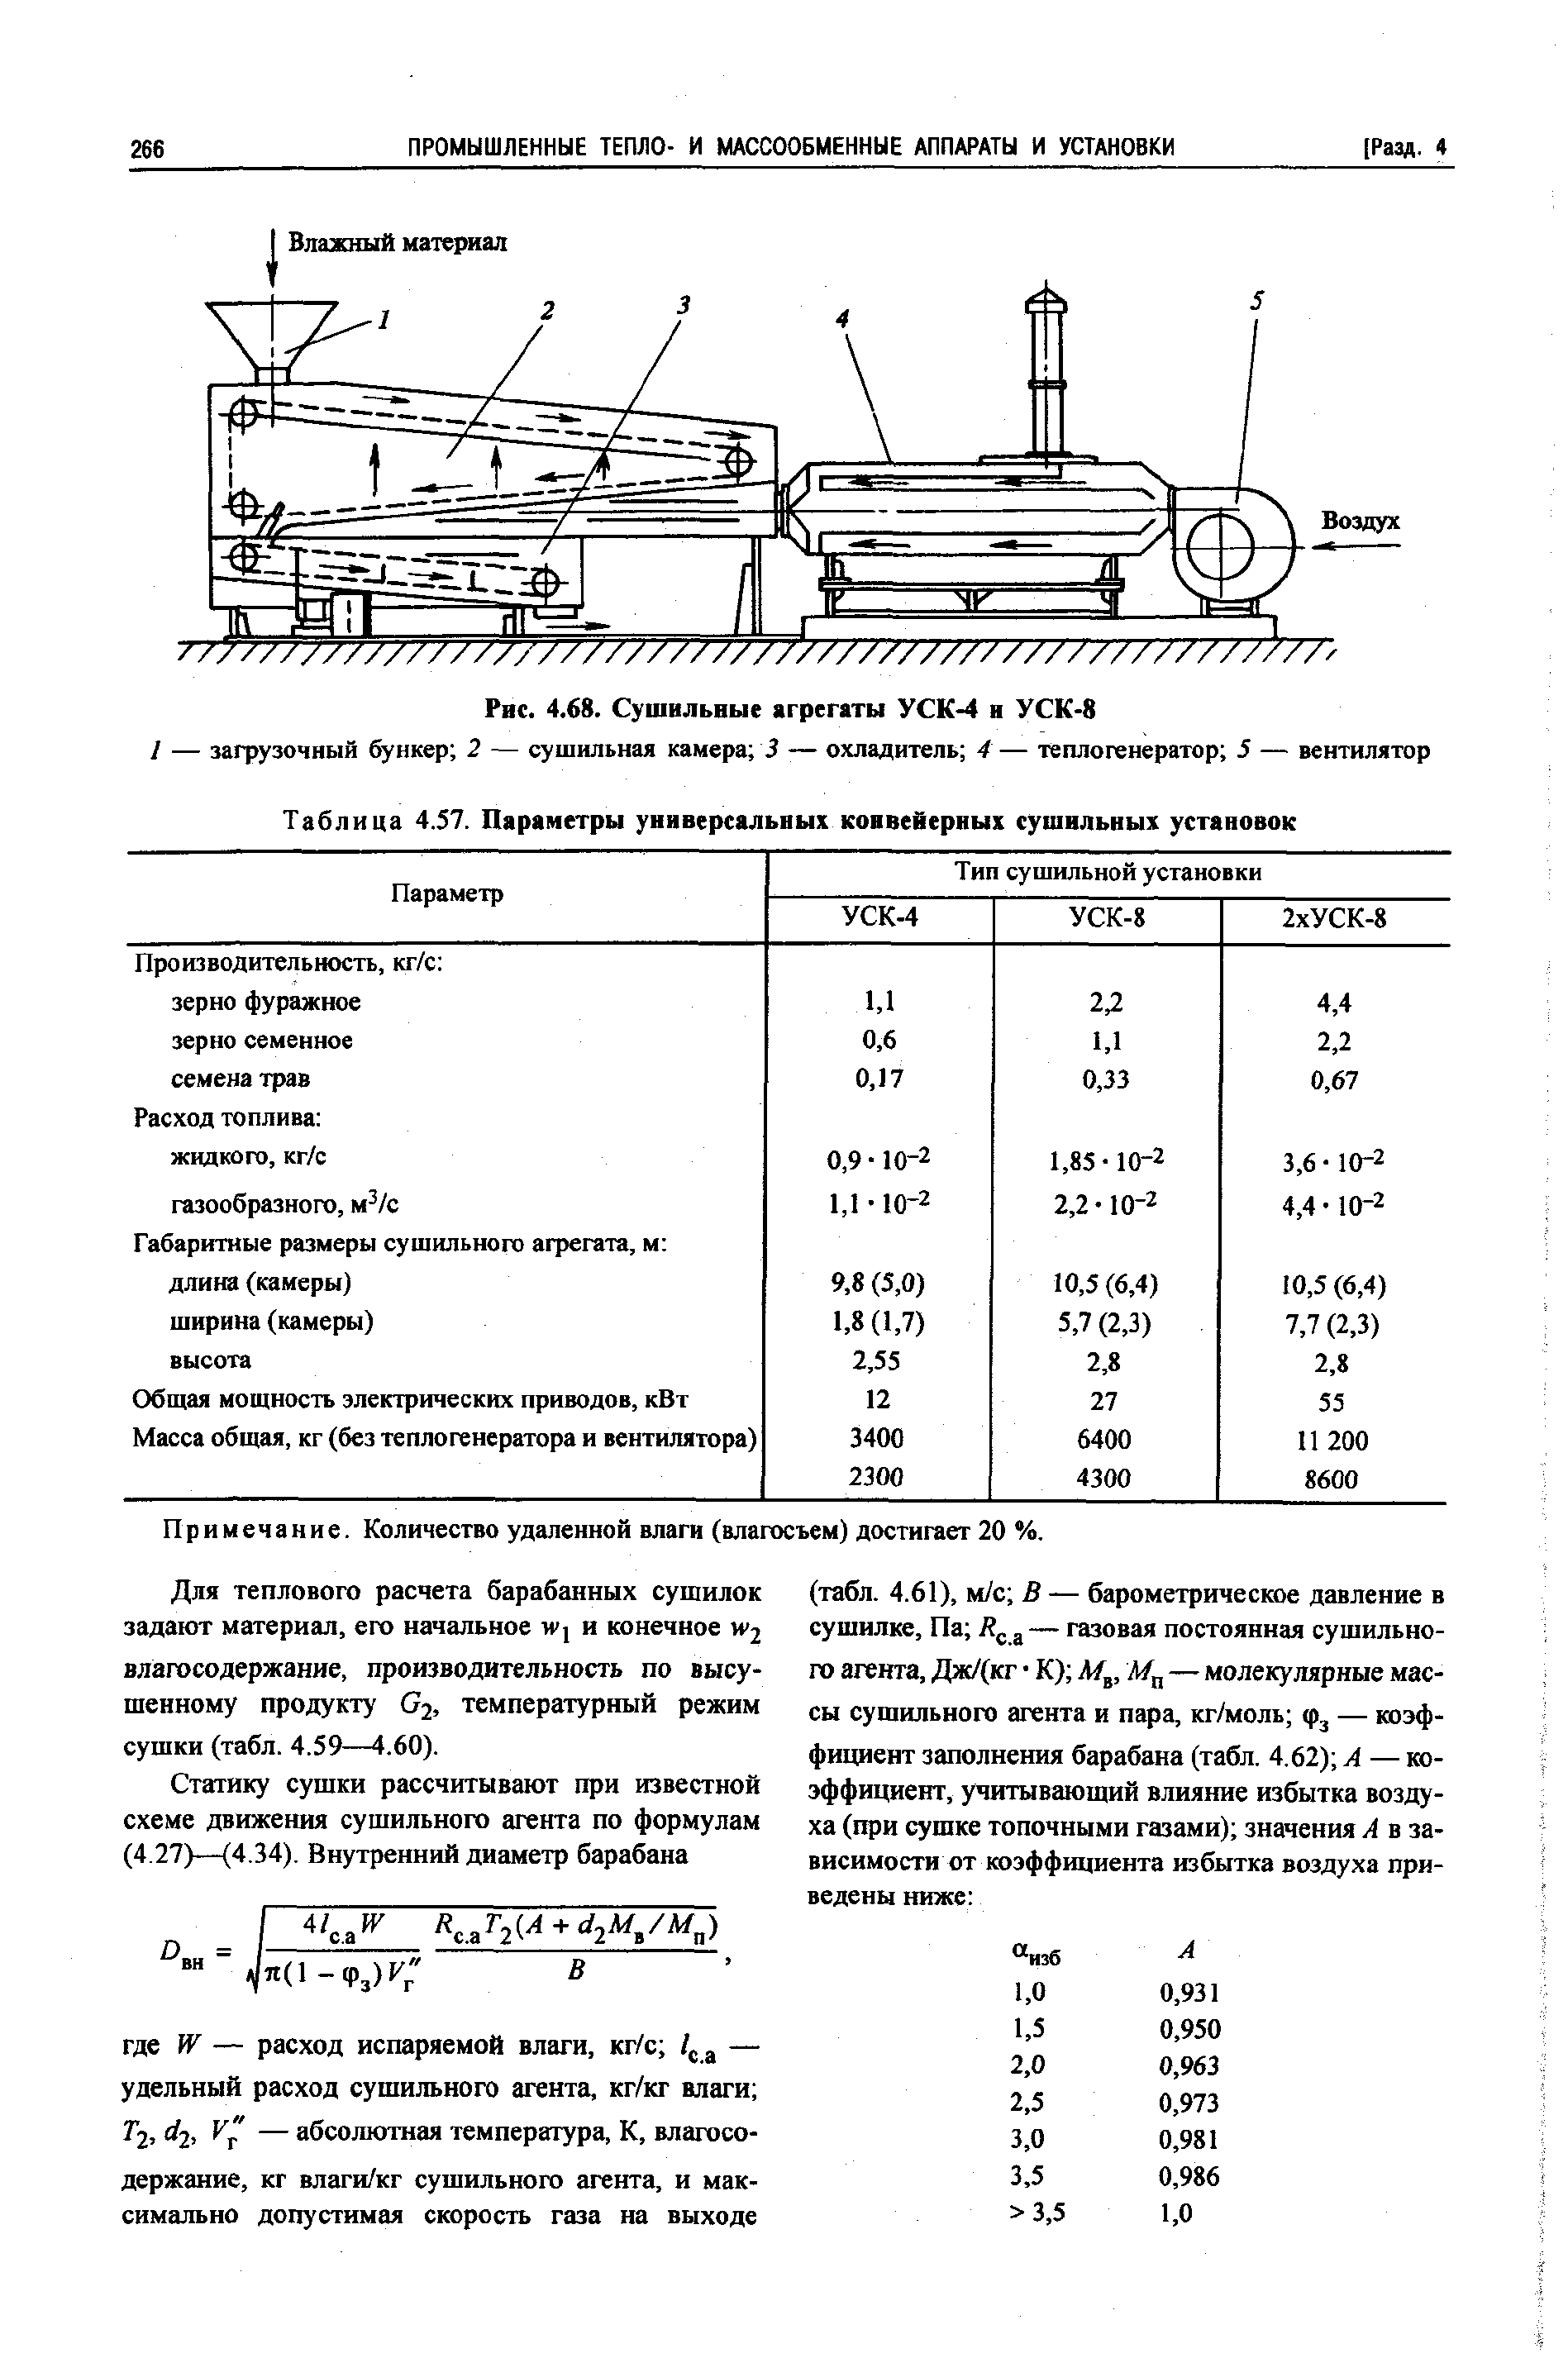 Таблица 4.57. Параметры универсальных конвейерных сушильных установок
